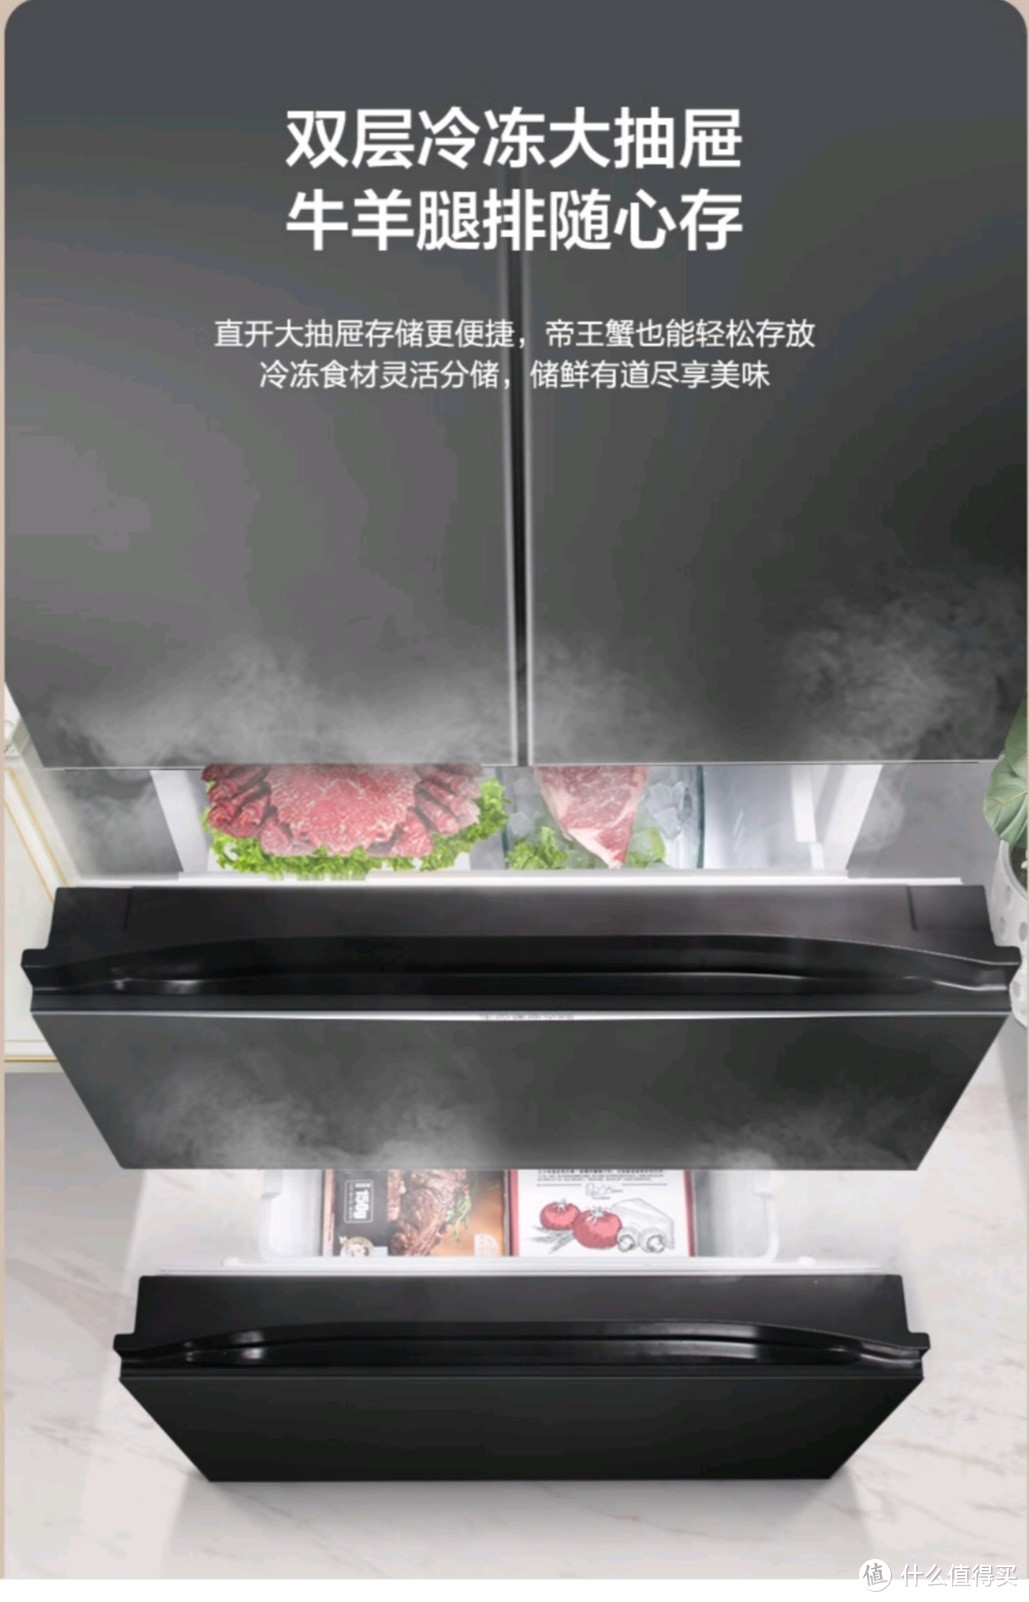 一级变频节能无霜，容声离子净味冰箱，为家庭带来便捷与品质。